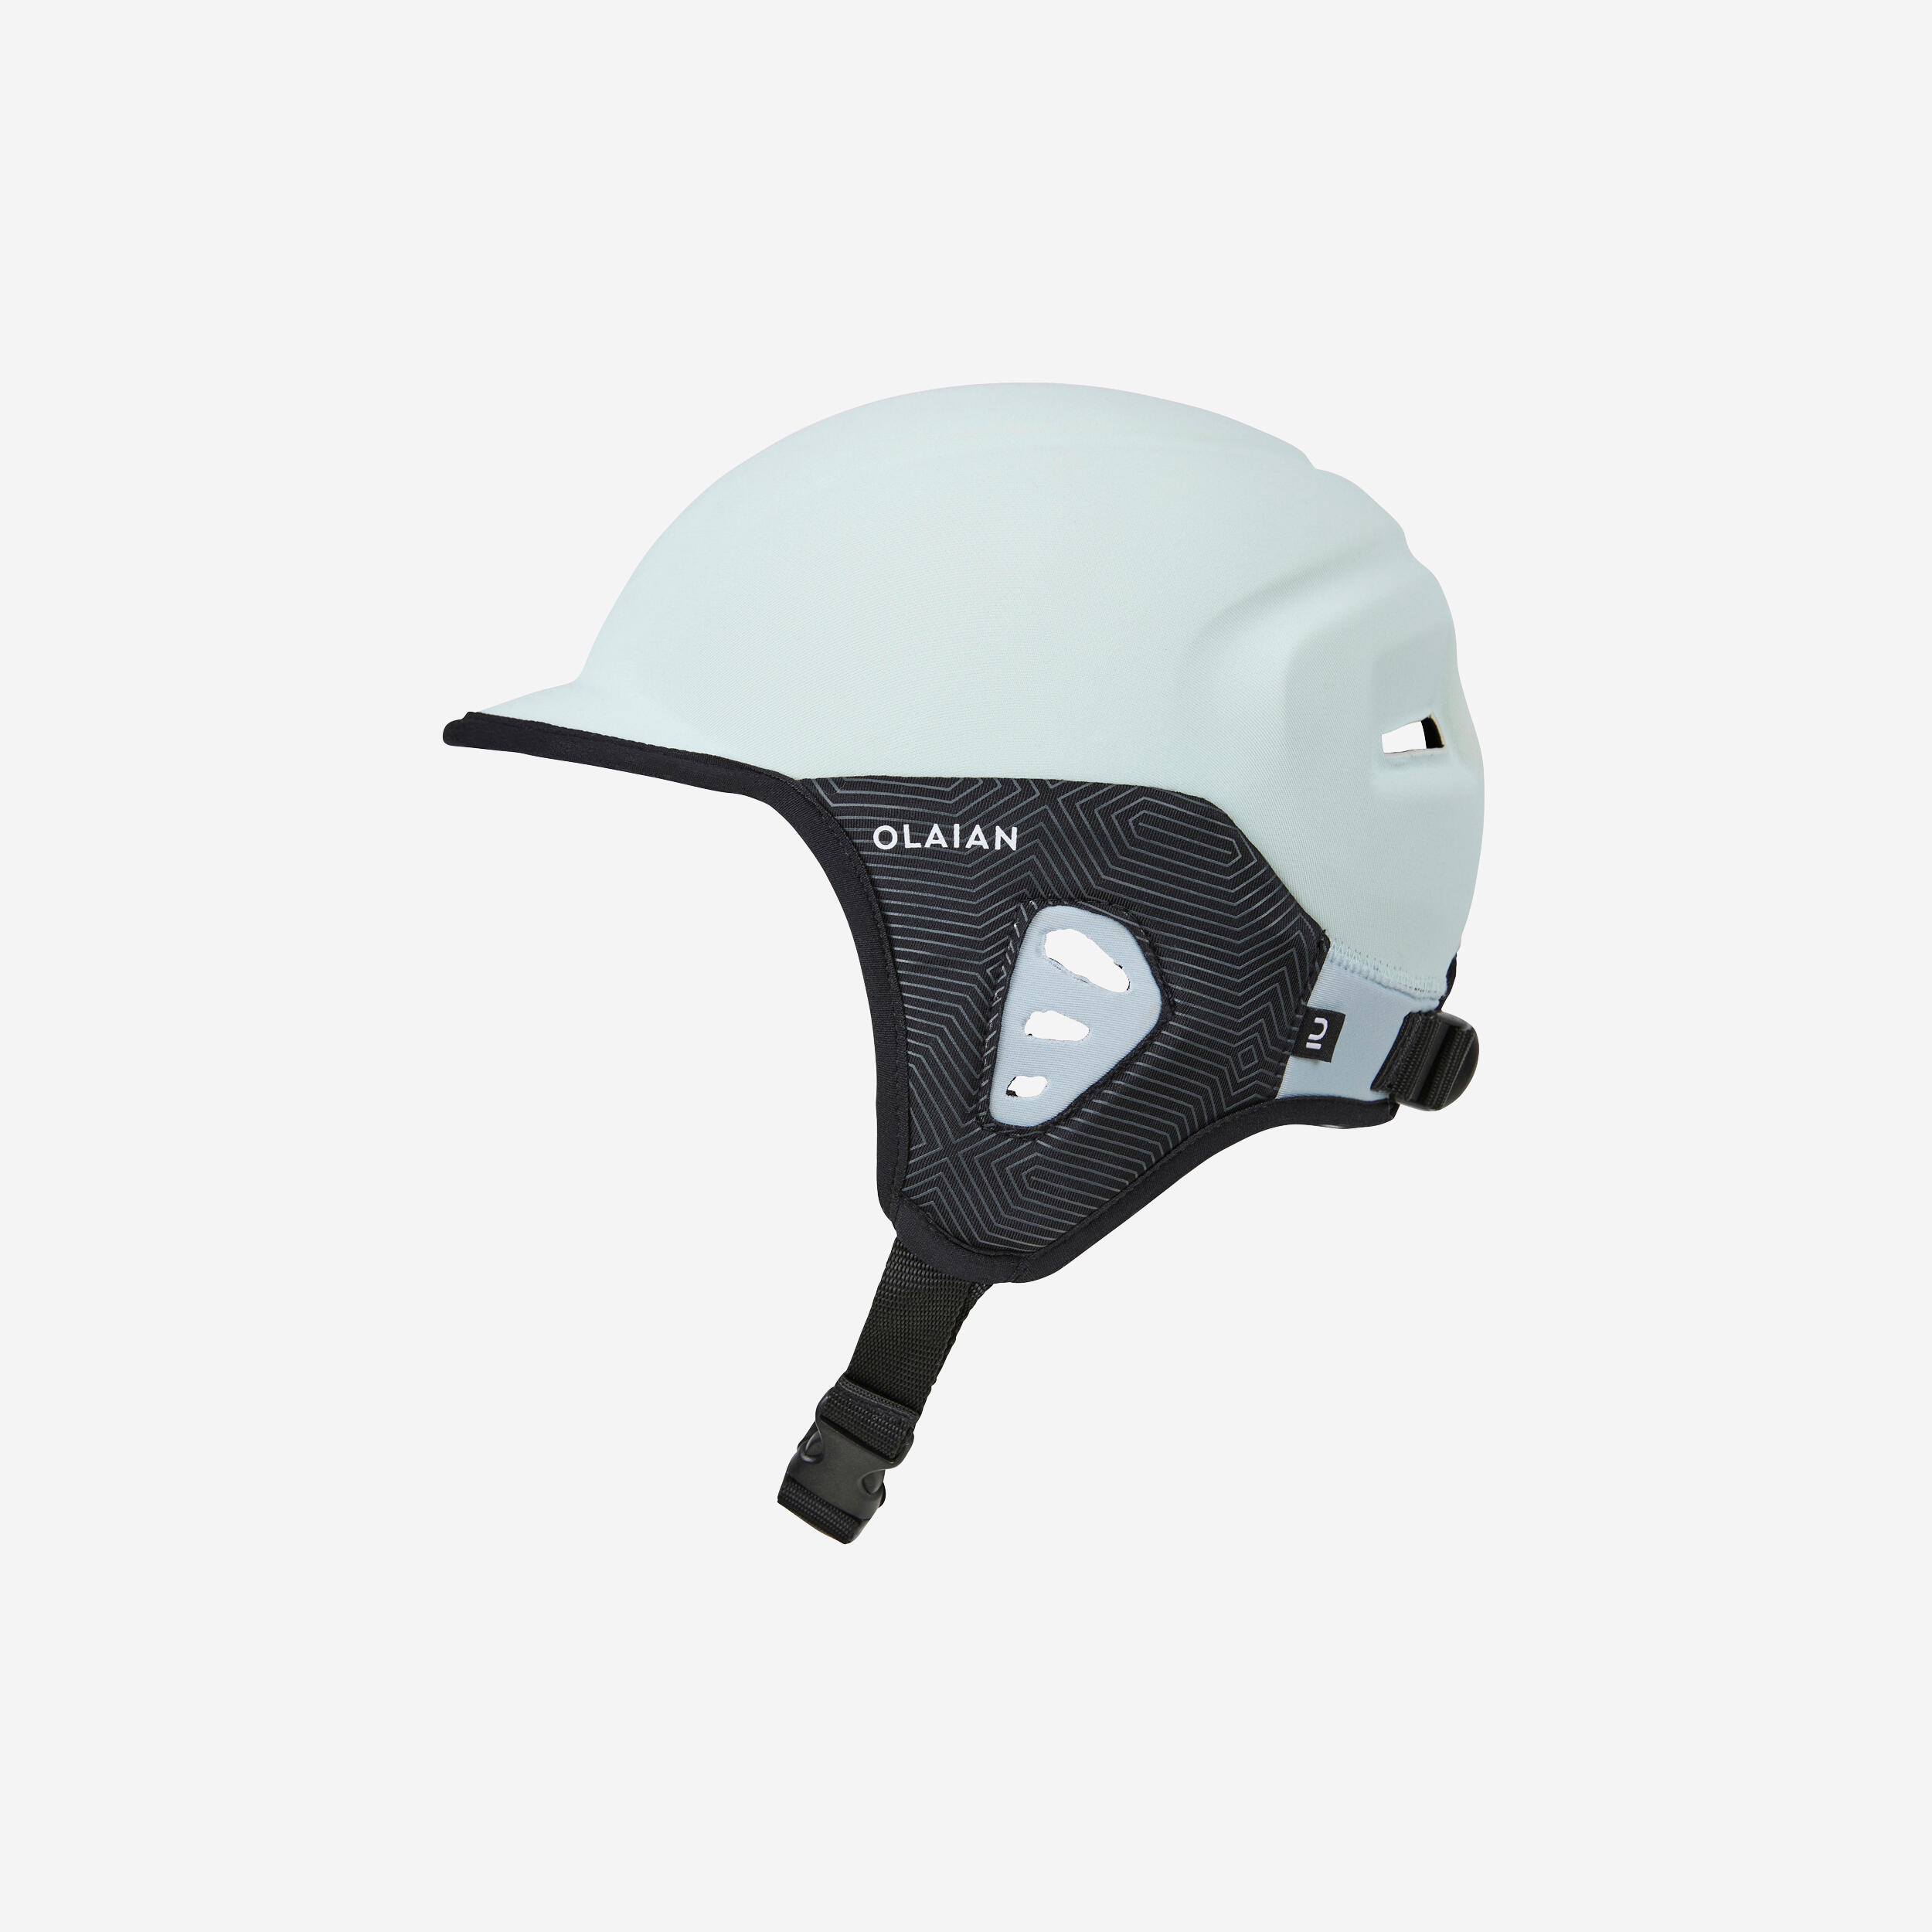 Helmet for surfing. Sky blue 1/7